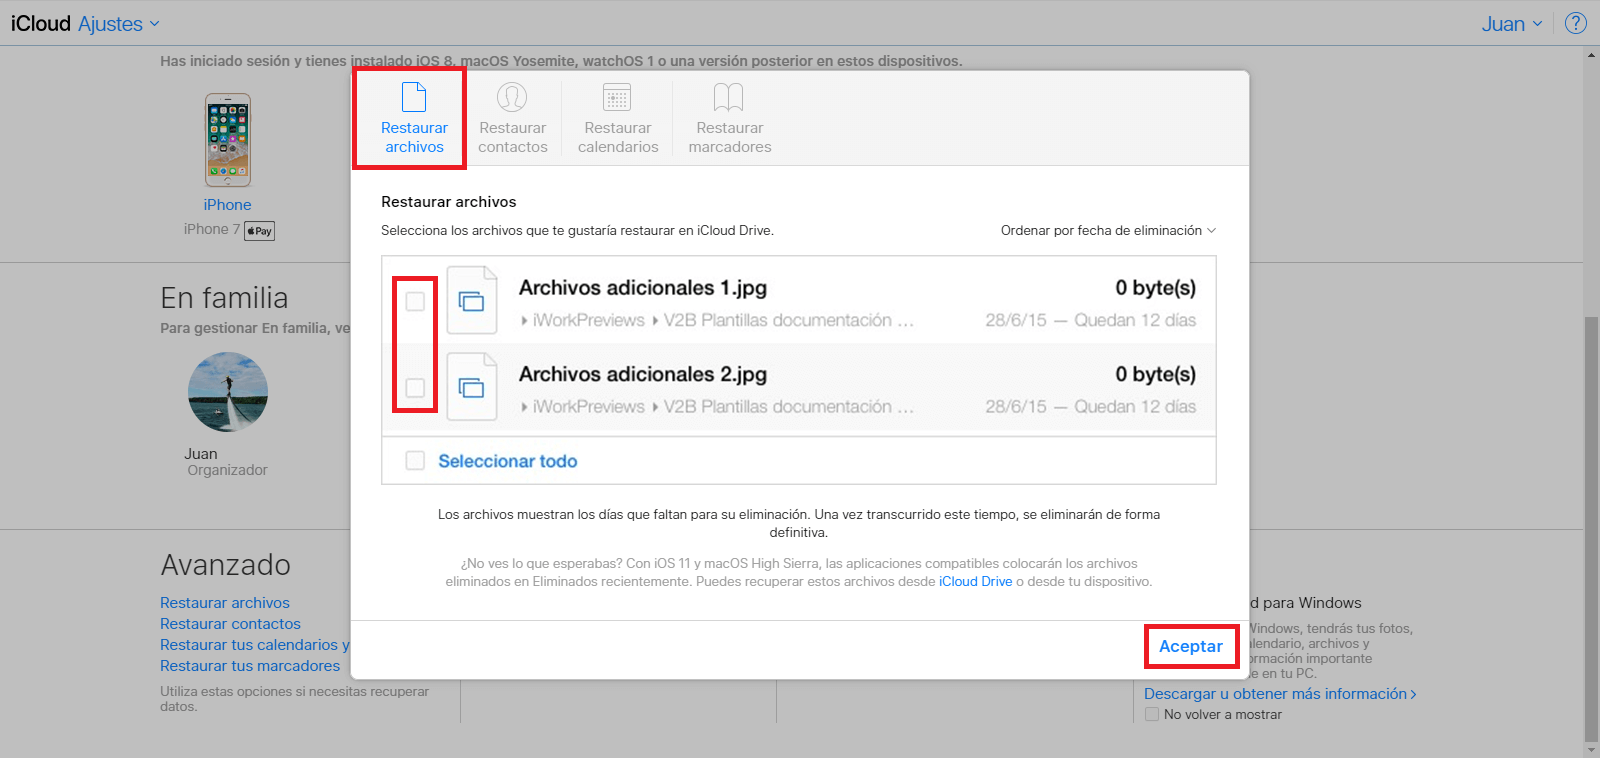 iCloud te permite recuperar archivos eliminados en tu dispositivo iOS o MacOS con iCloud Drive